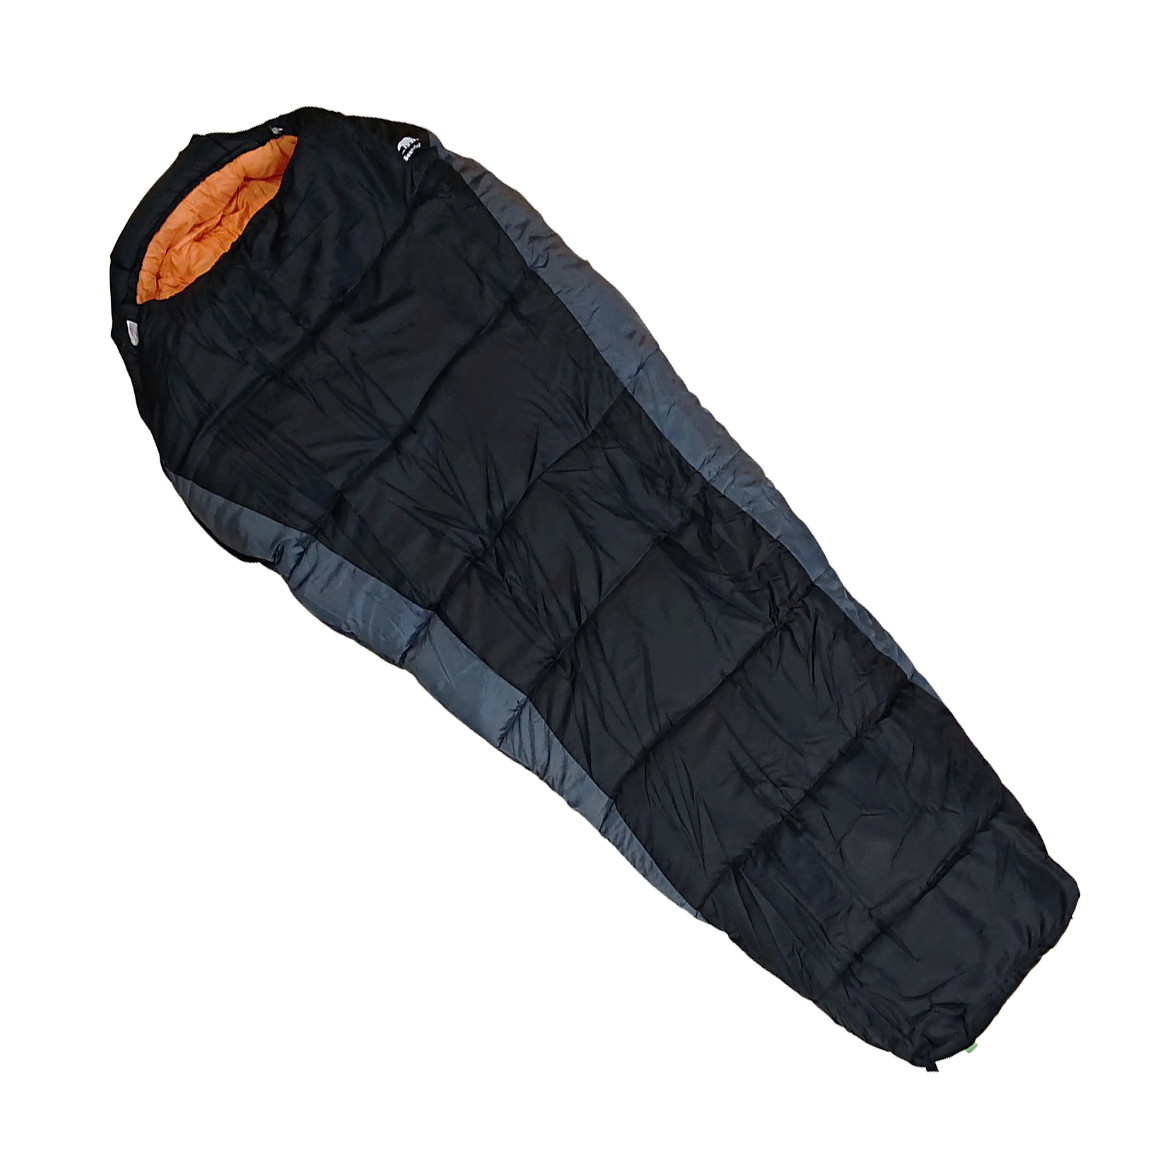 マミー型寝袋-32℃ FX-402D - Bears Rock:寝袋・テントなどアウトドア